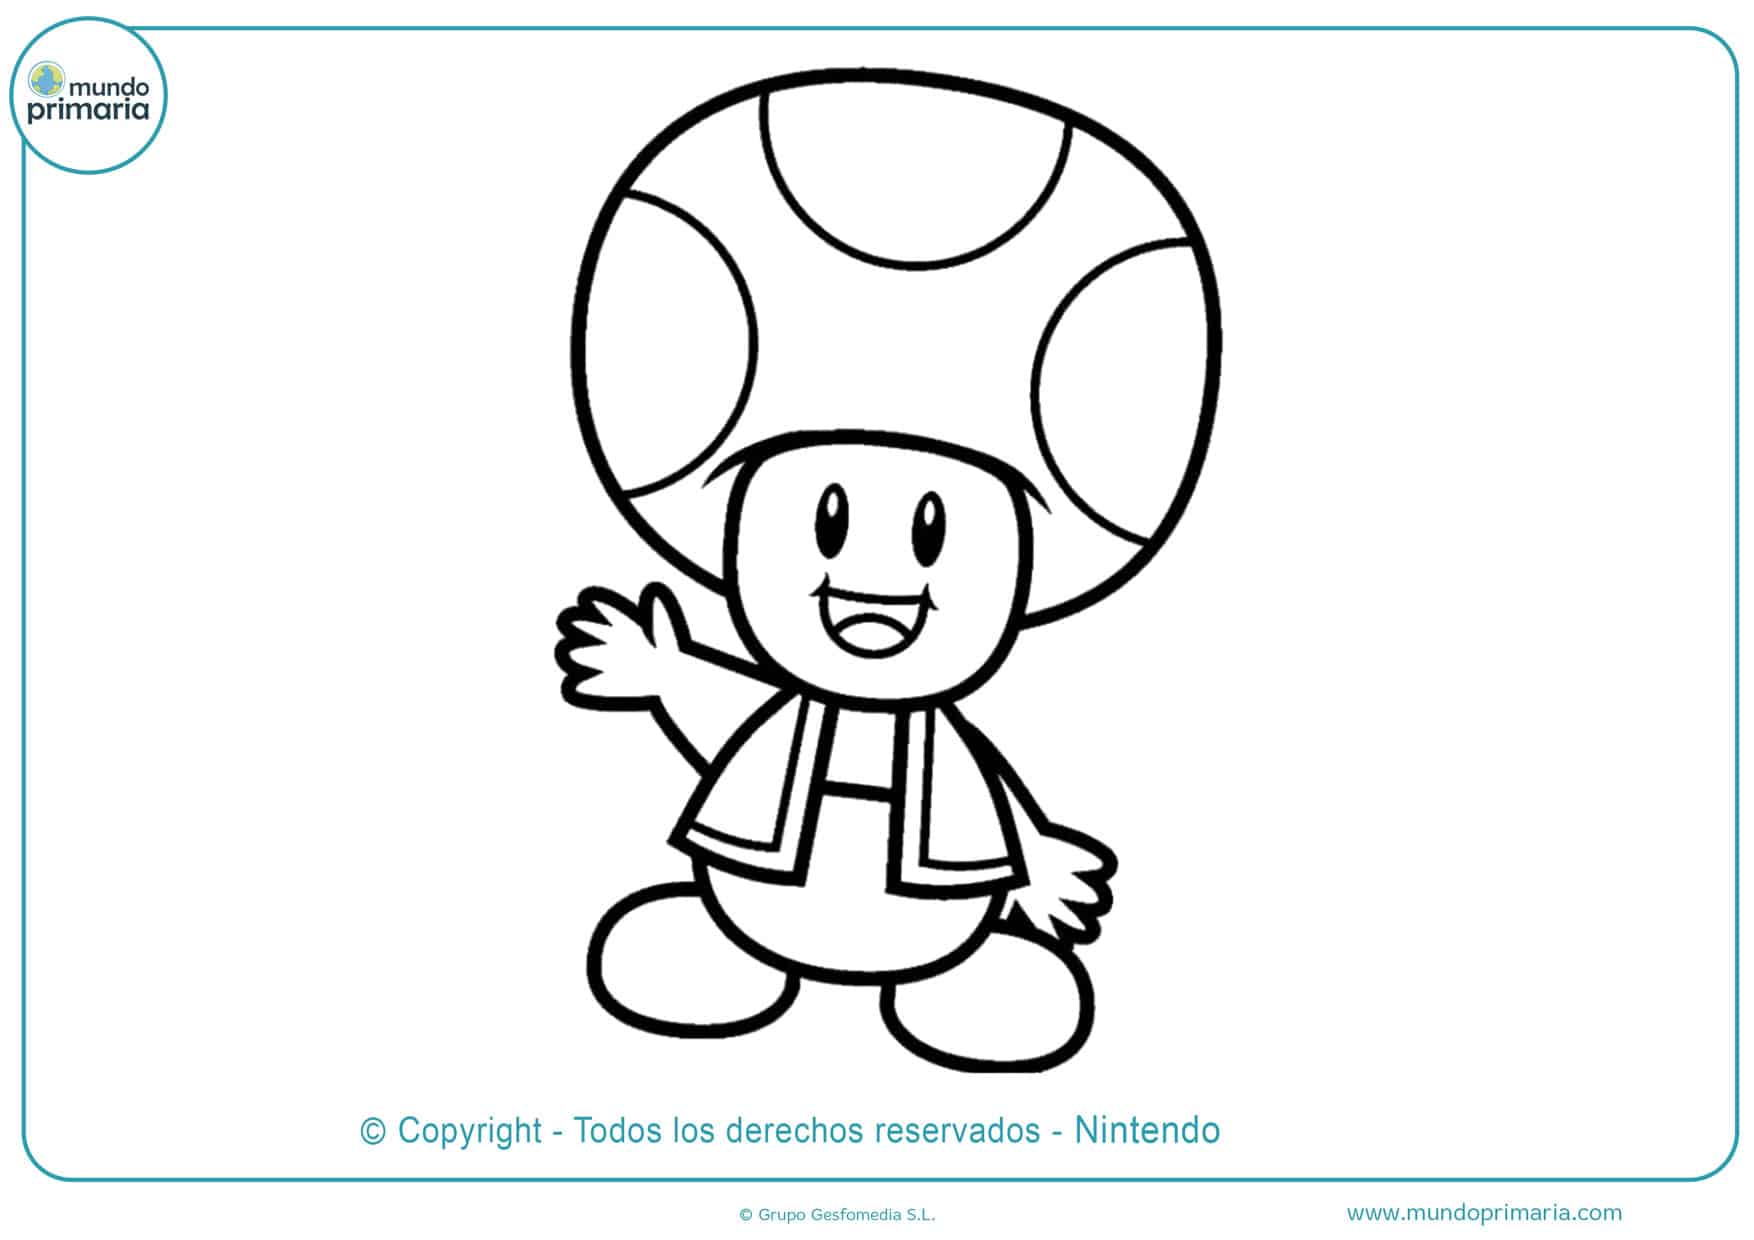 Dibujos de Mario Bros para Colorear - Mundo Primaria